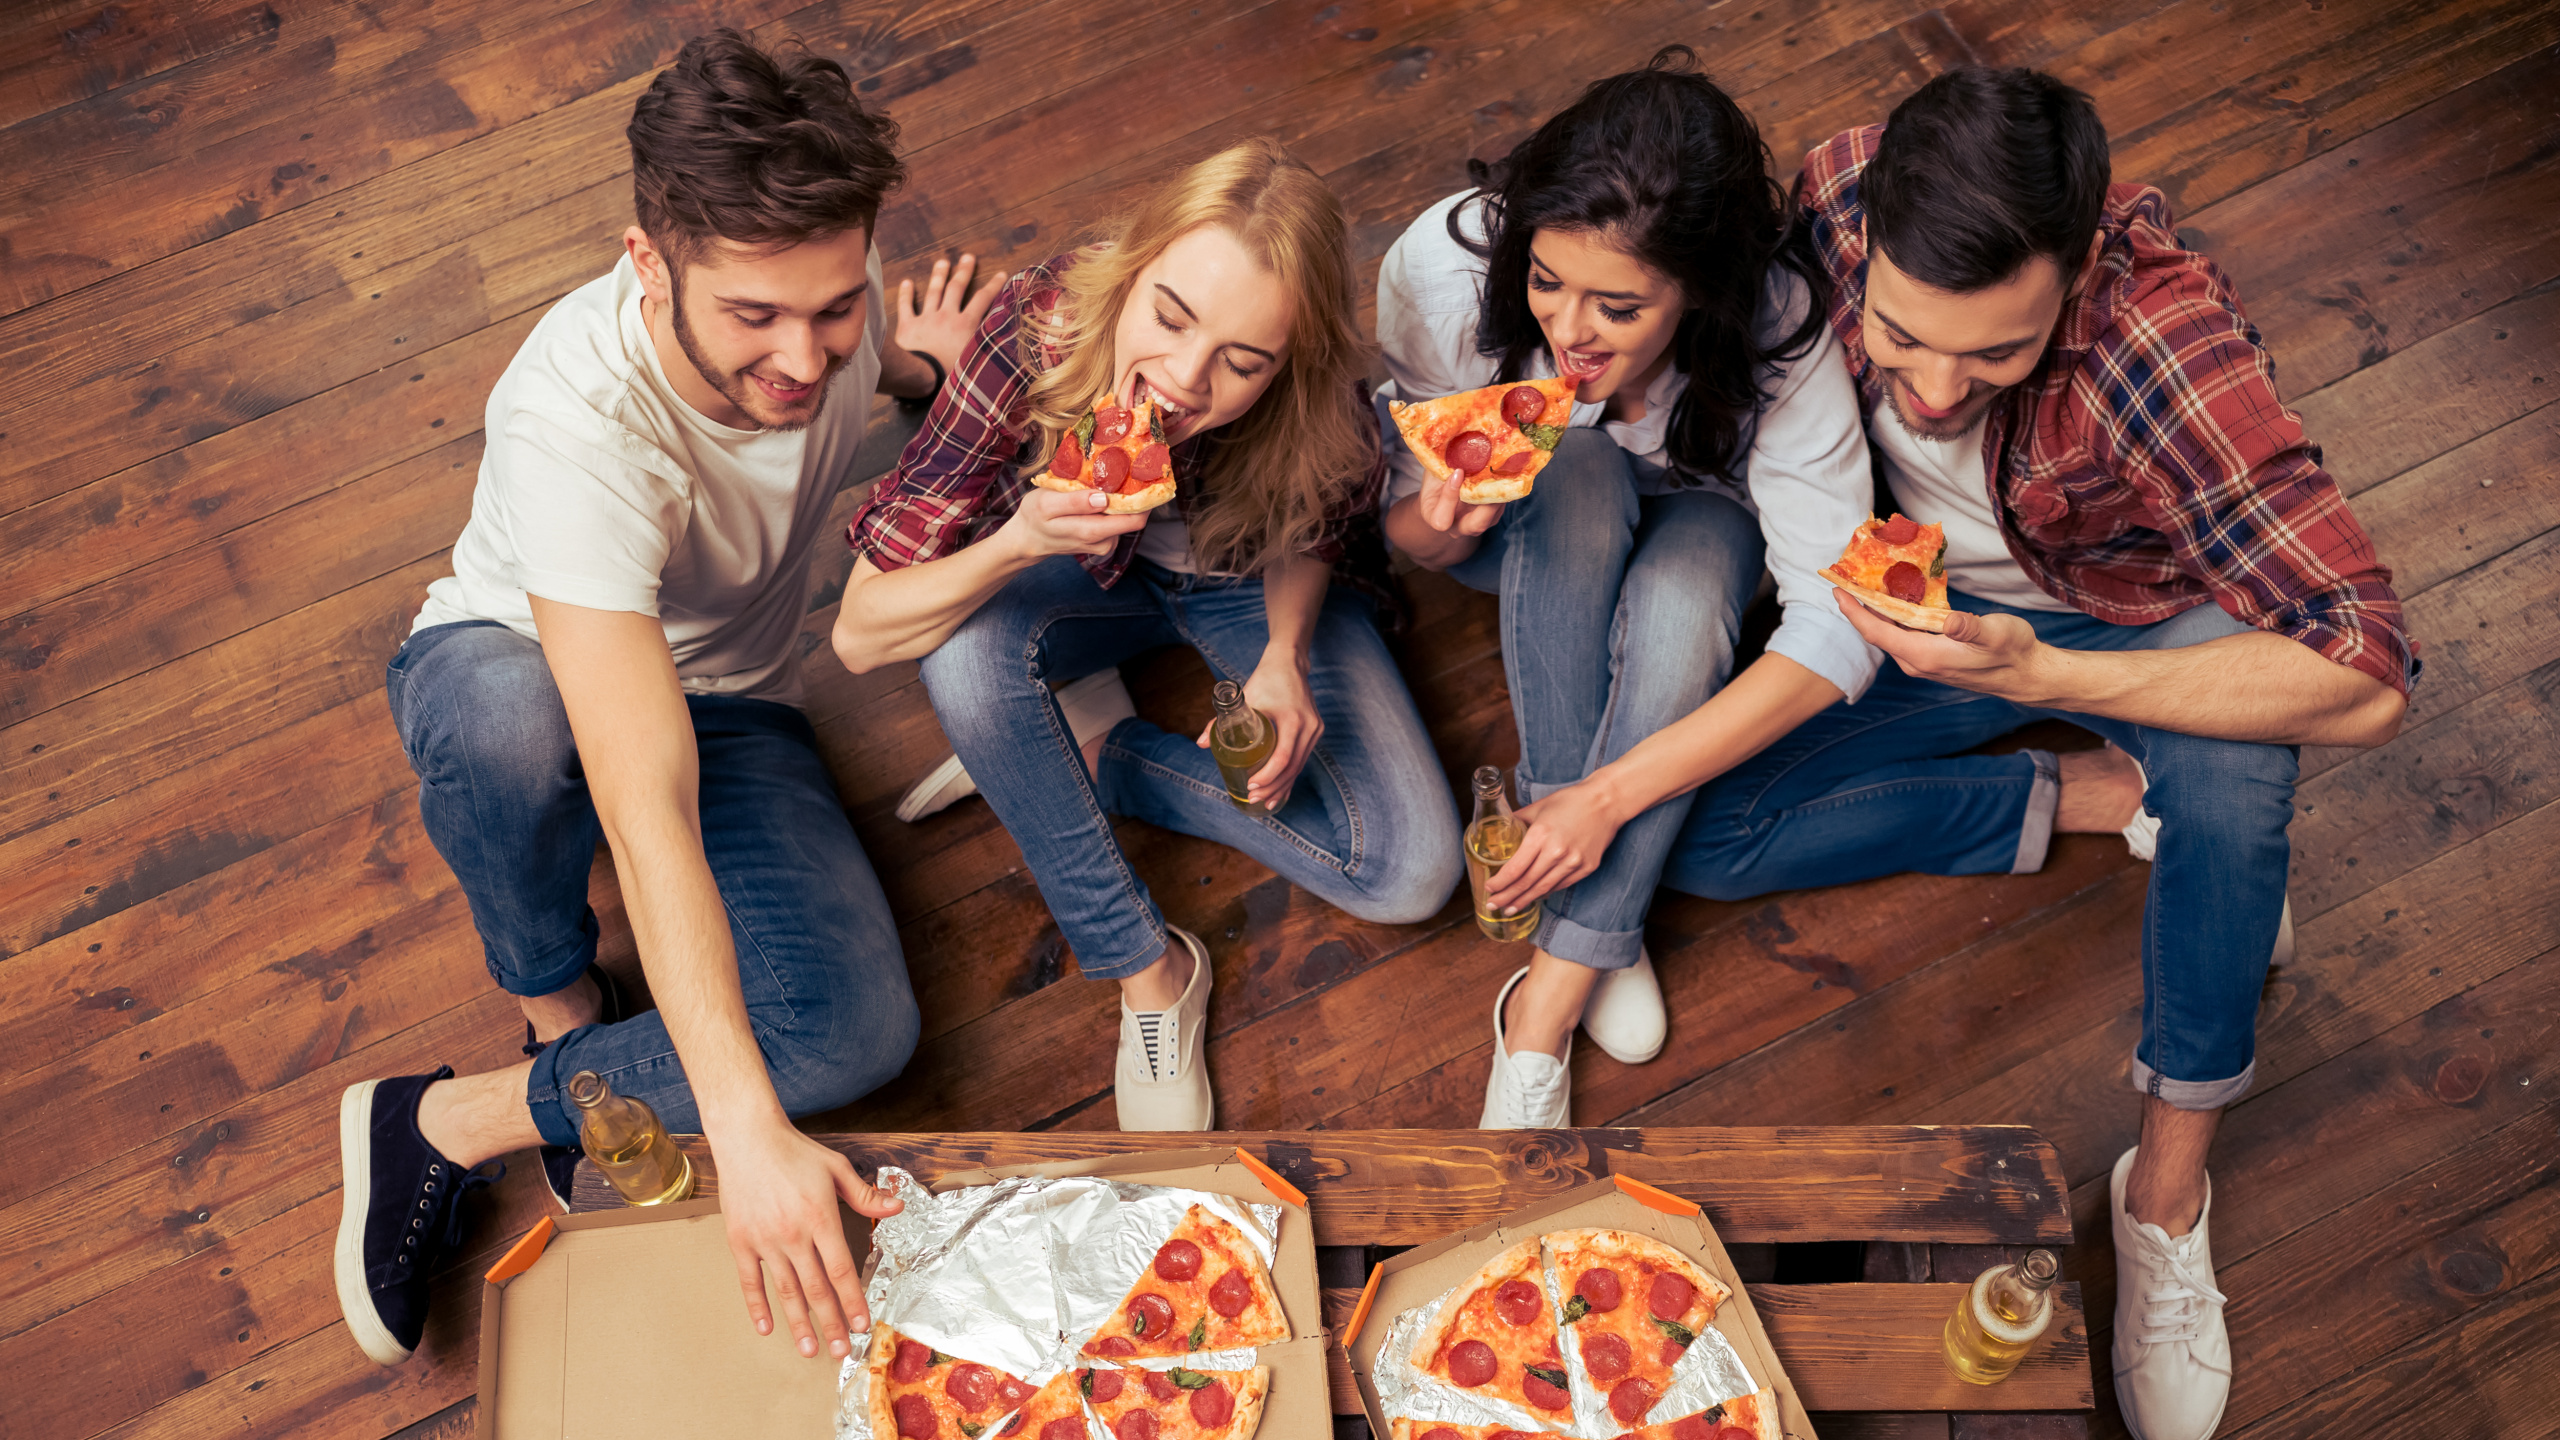 披萨, 意大利菜, 吃, 乐趣, 食品 壁纸 2560x1440 允许